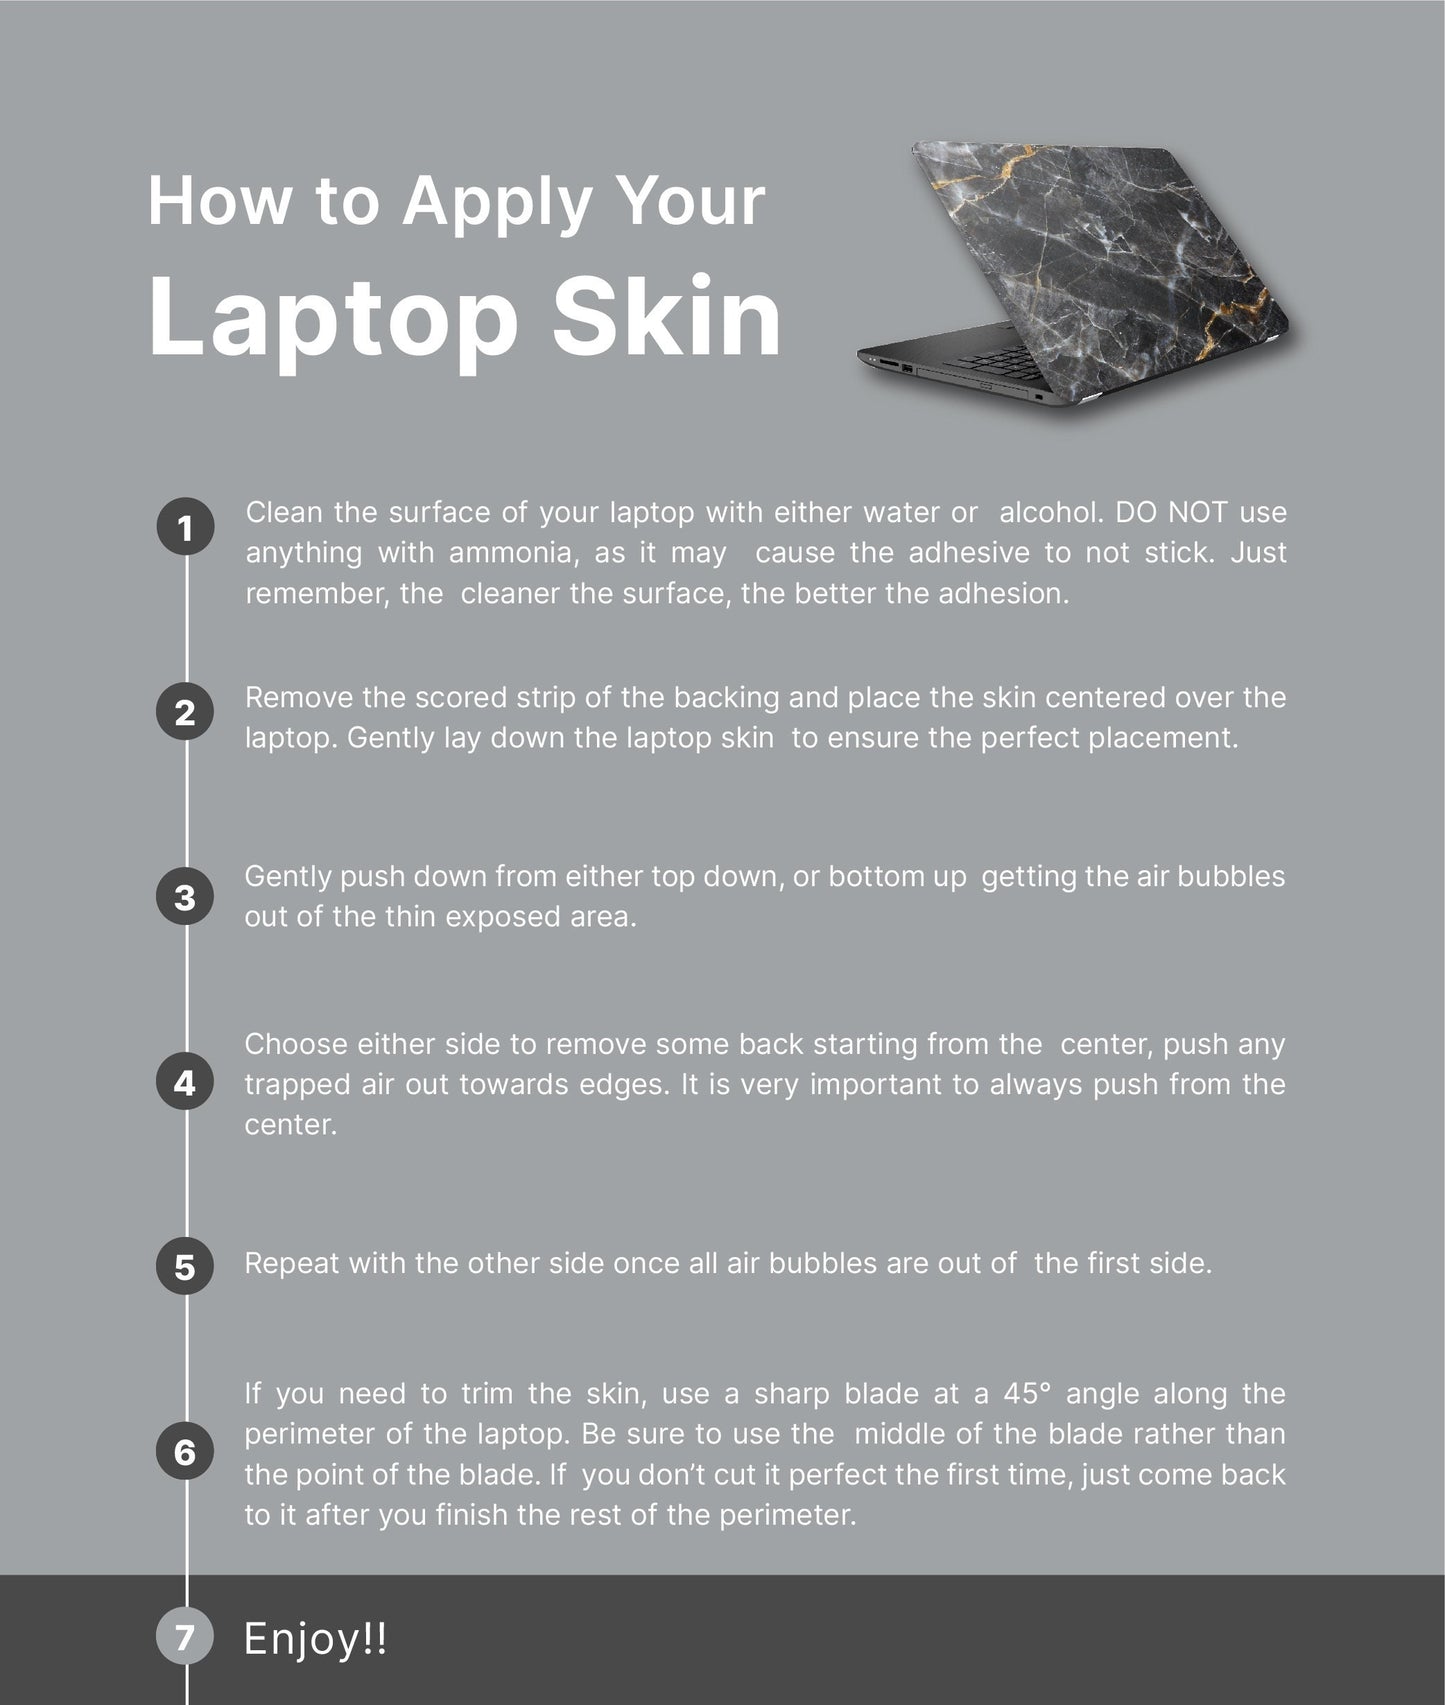 Hummingbird Pink Laptop Skin, Laptop Cover, Laptop Skins, Removable Laptop Skins, Laptop Decal, Customized Laptop Skin, Laptop Stickers 273